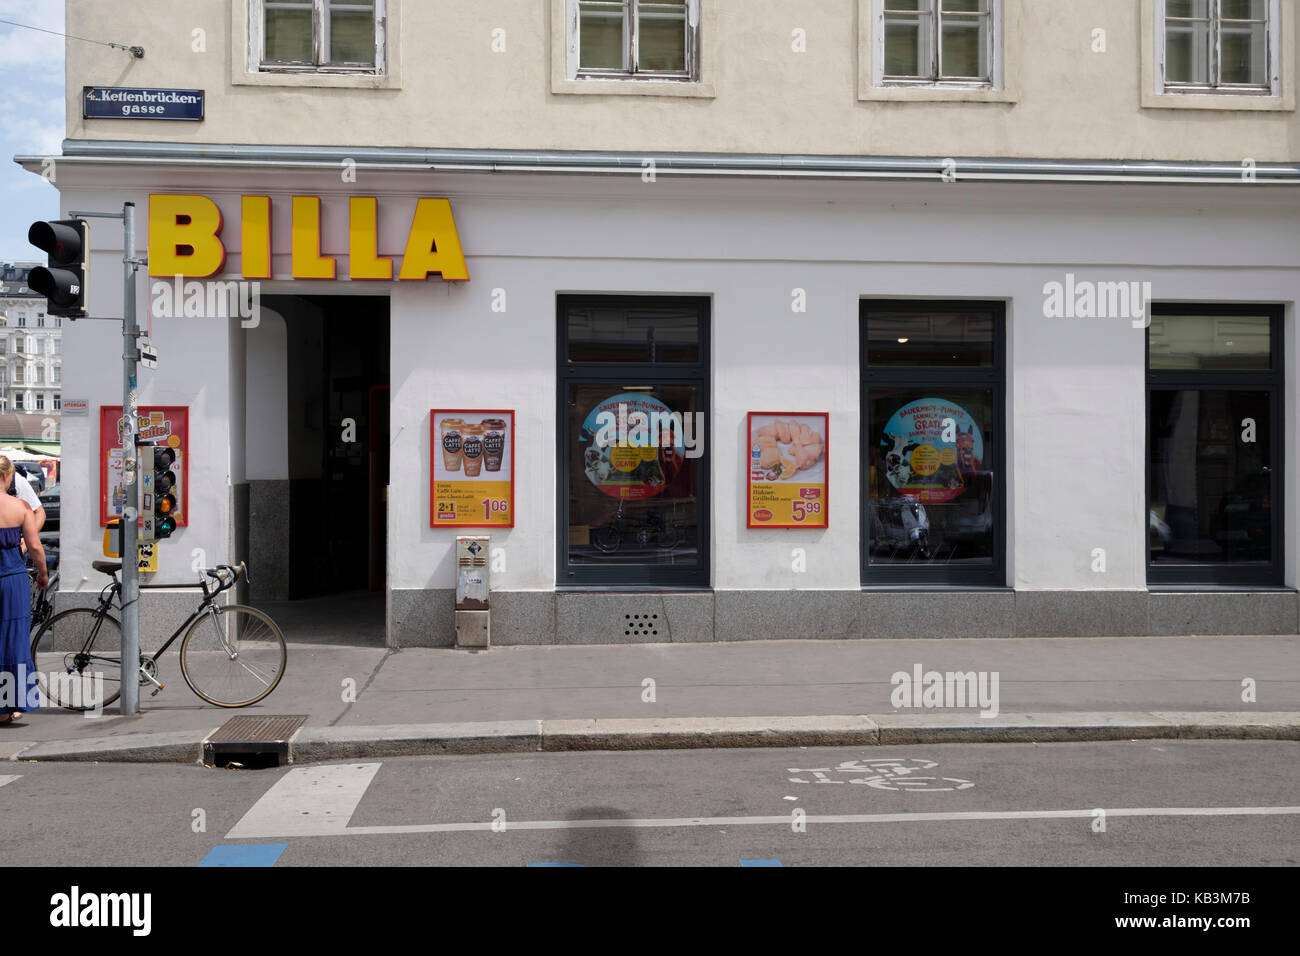 Billa supermarket in Vienna, Austria, Europe Stock Photo